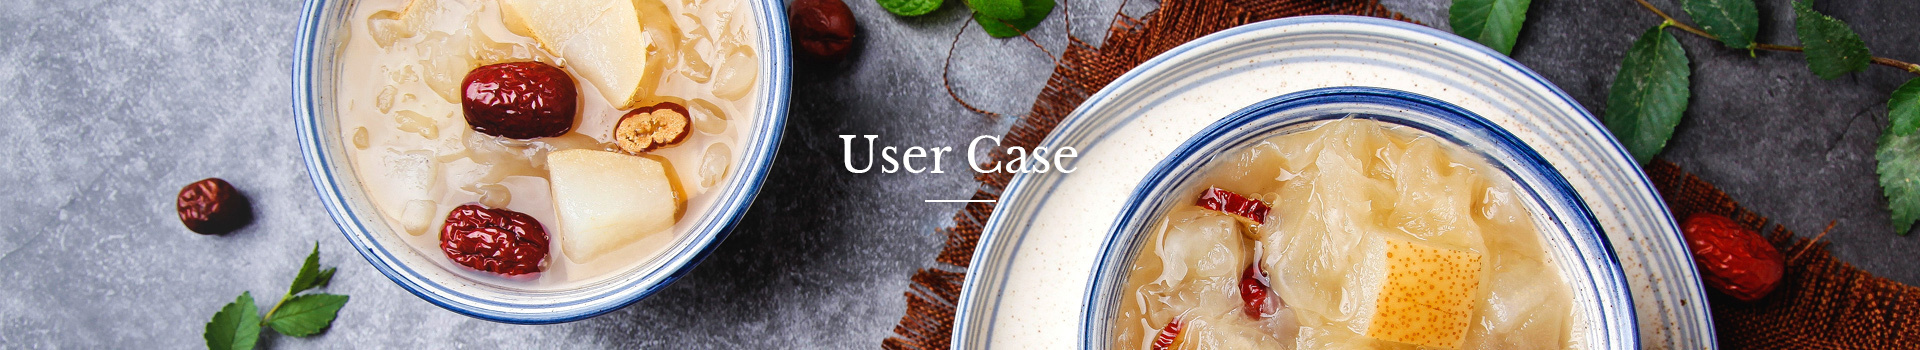 User Case